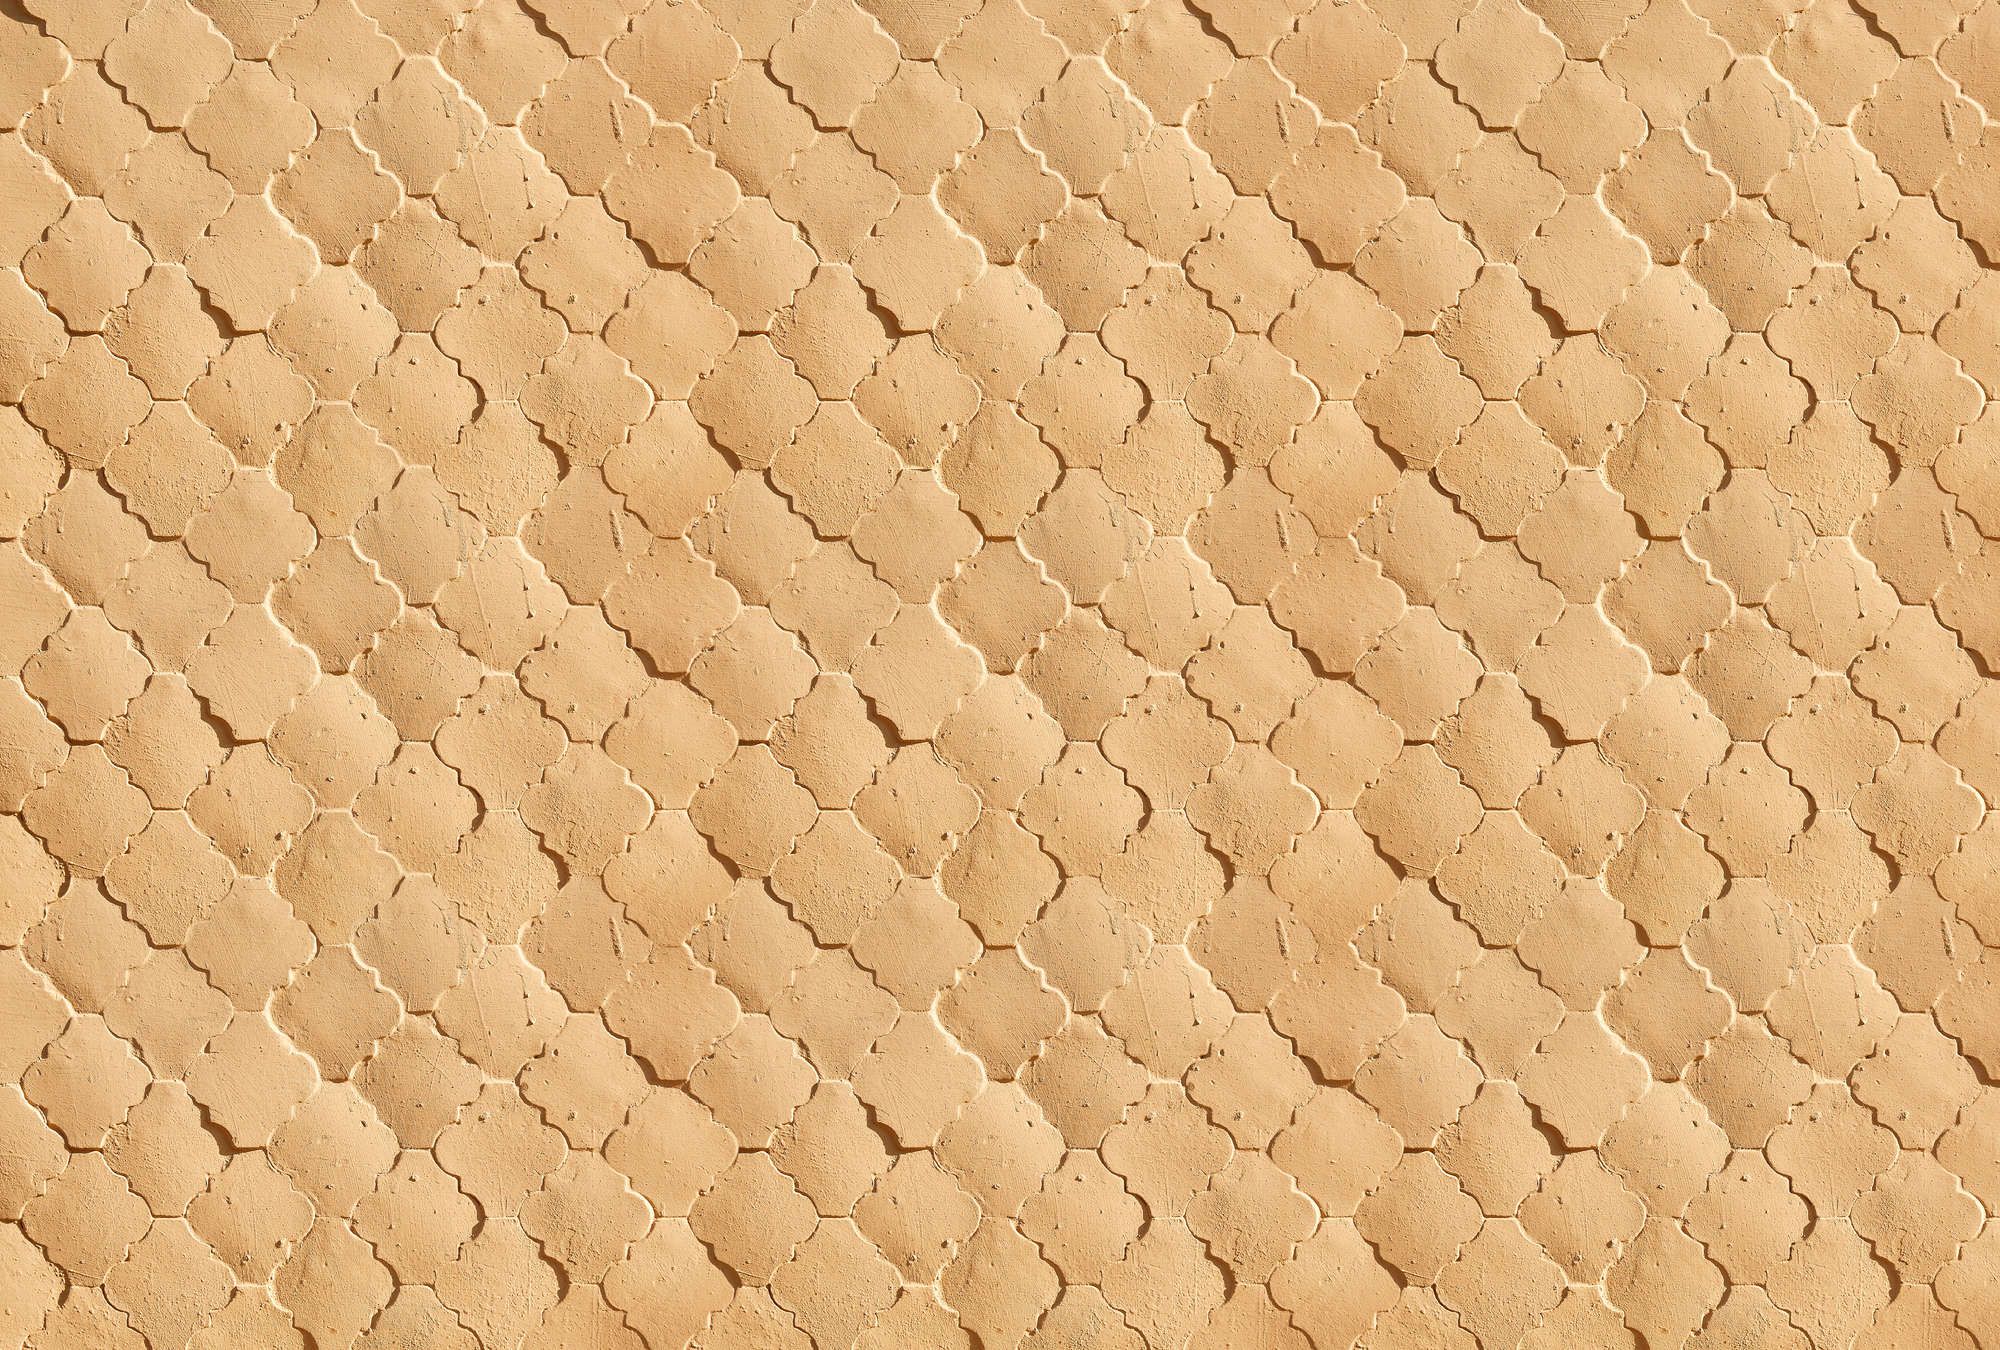             Fotomural »siena« - Diseño de azulejos mediterráneos en colores arena - Material no tejido de alta calidad, liso y ligeramente brillante
        